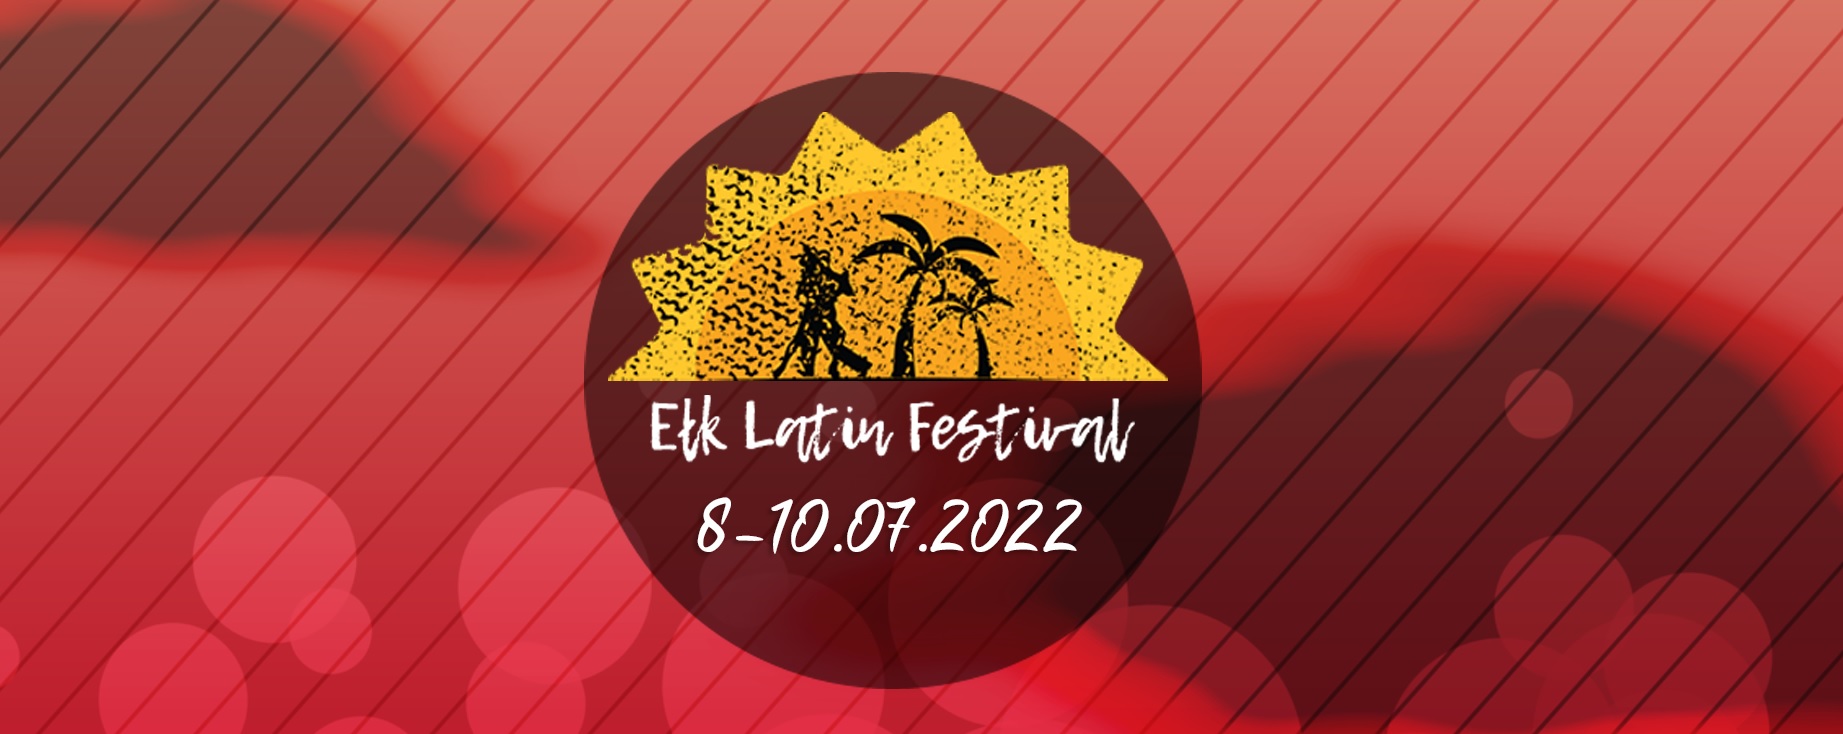 Ełk Latin Festival - die Tanzhauptstadt von Masuren